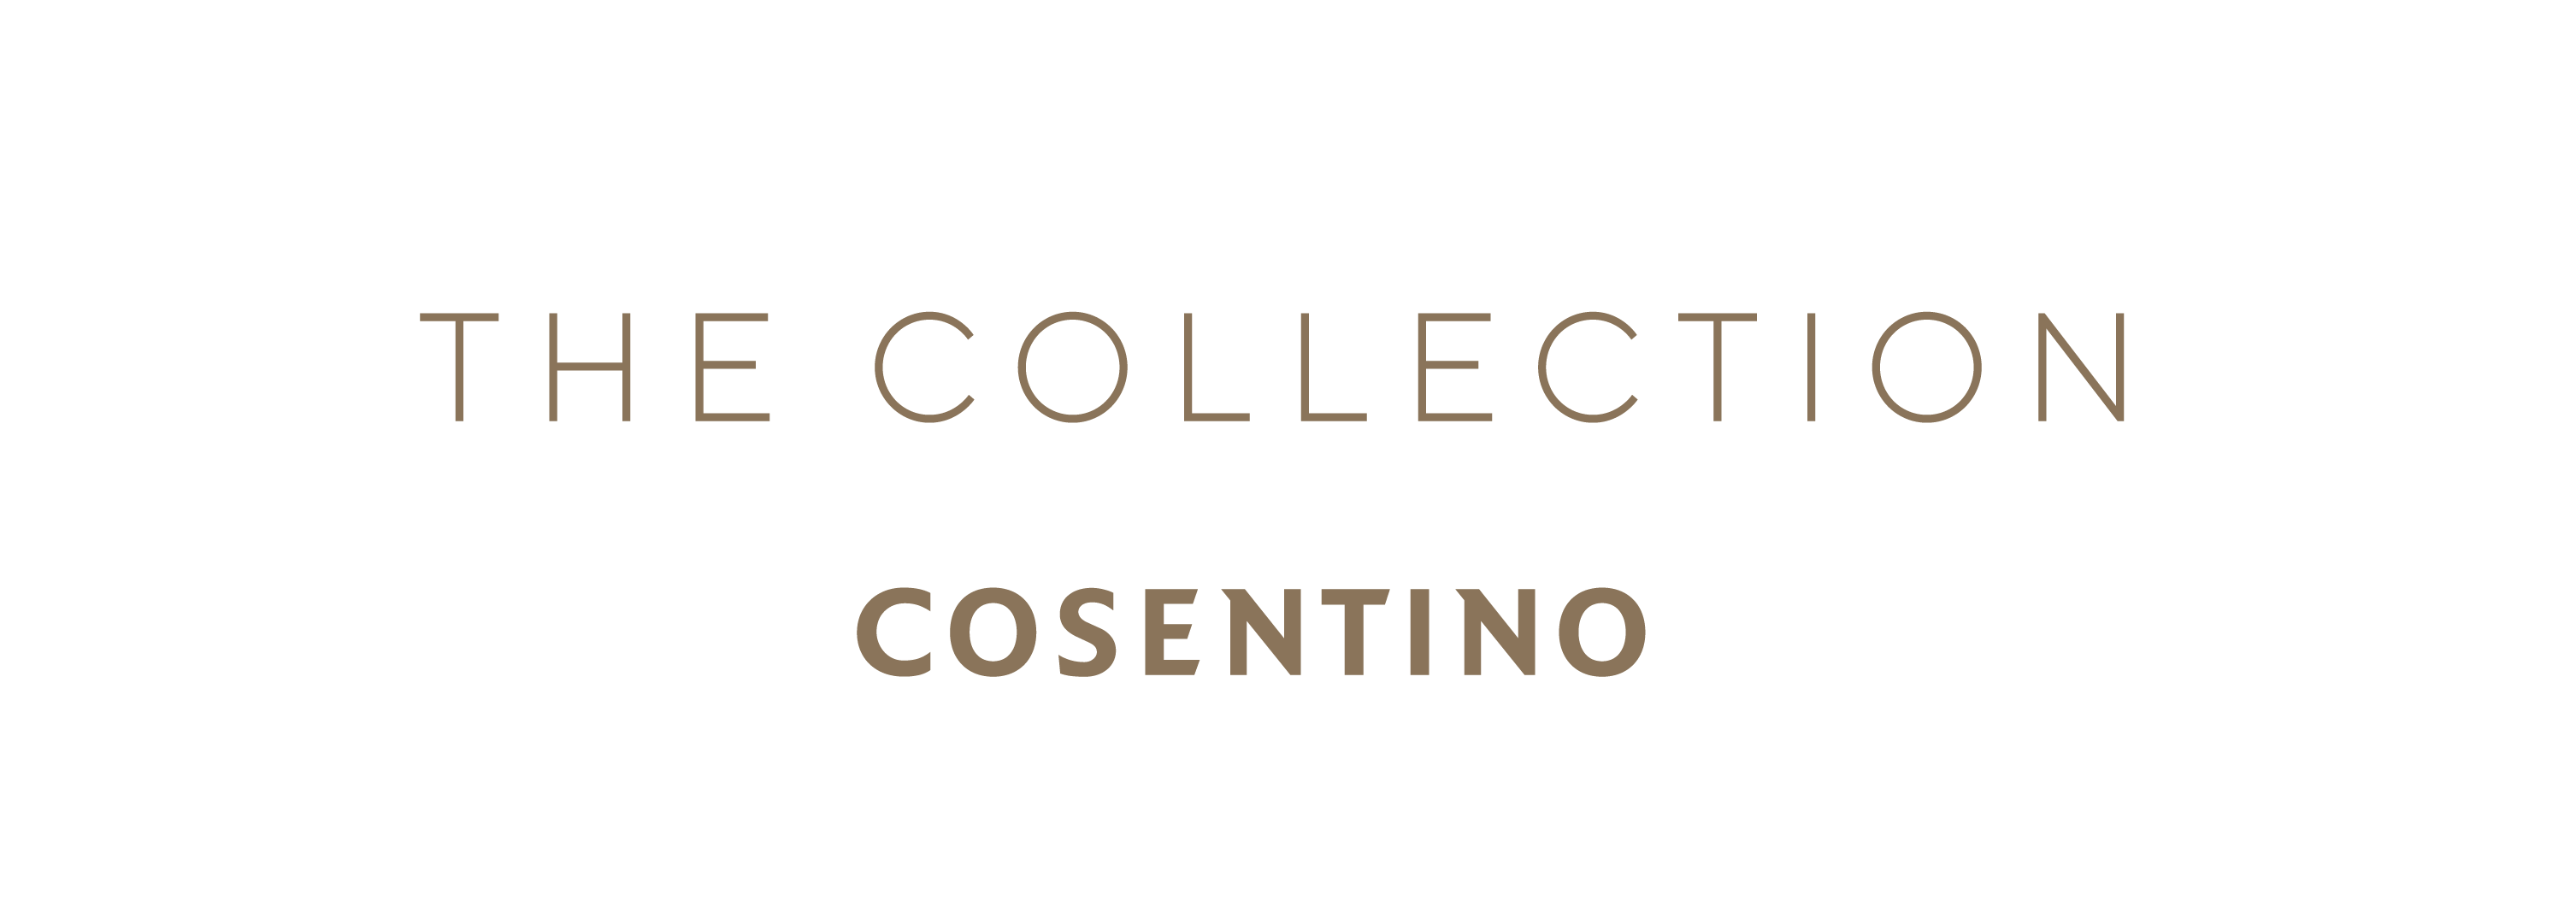 Bildnummer 32 des aktuellen Abschnitts von Cosentino präsentiert The Collection DKTN® 2020 von Cosentino Deutschland